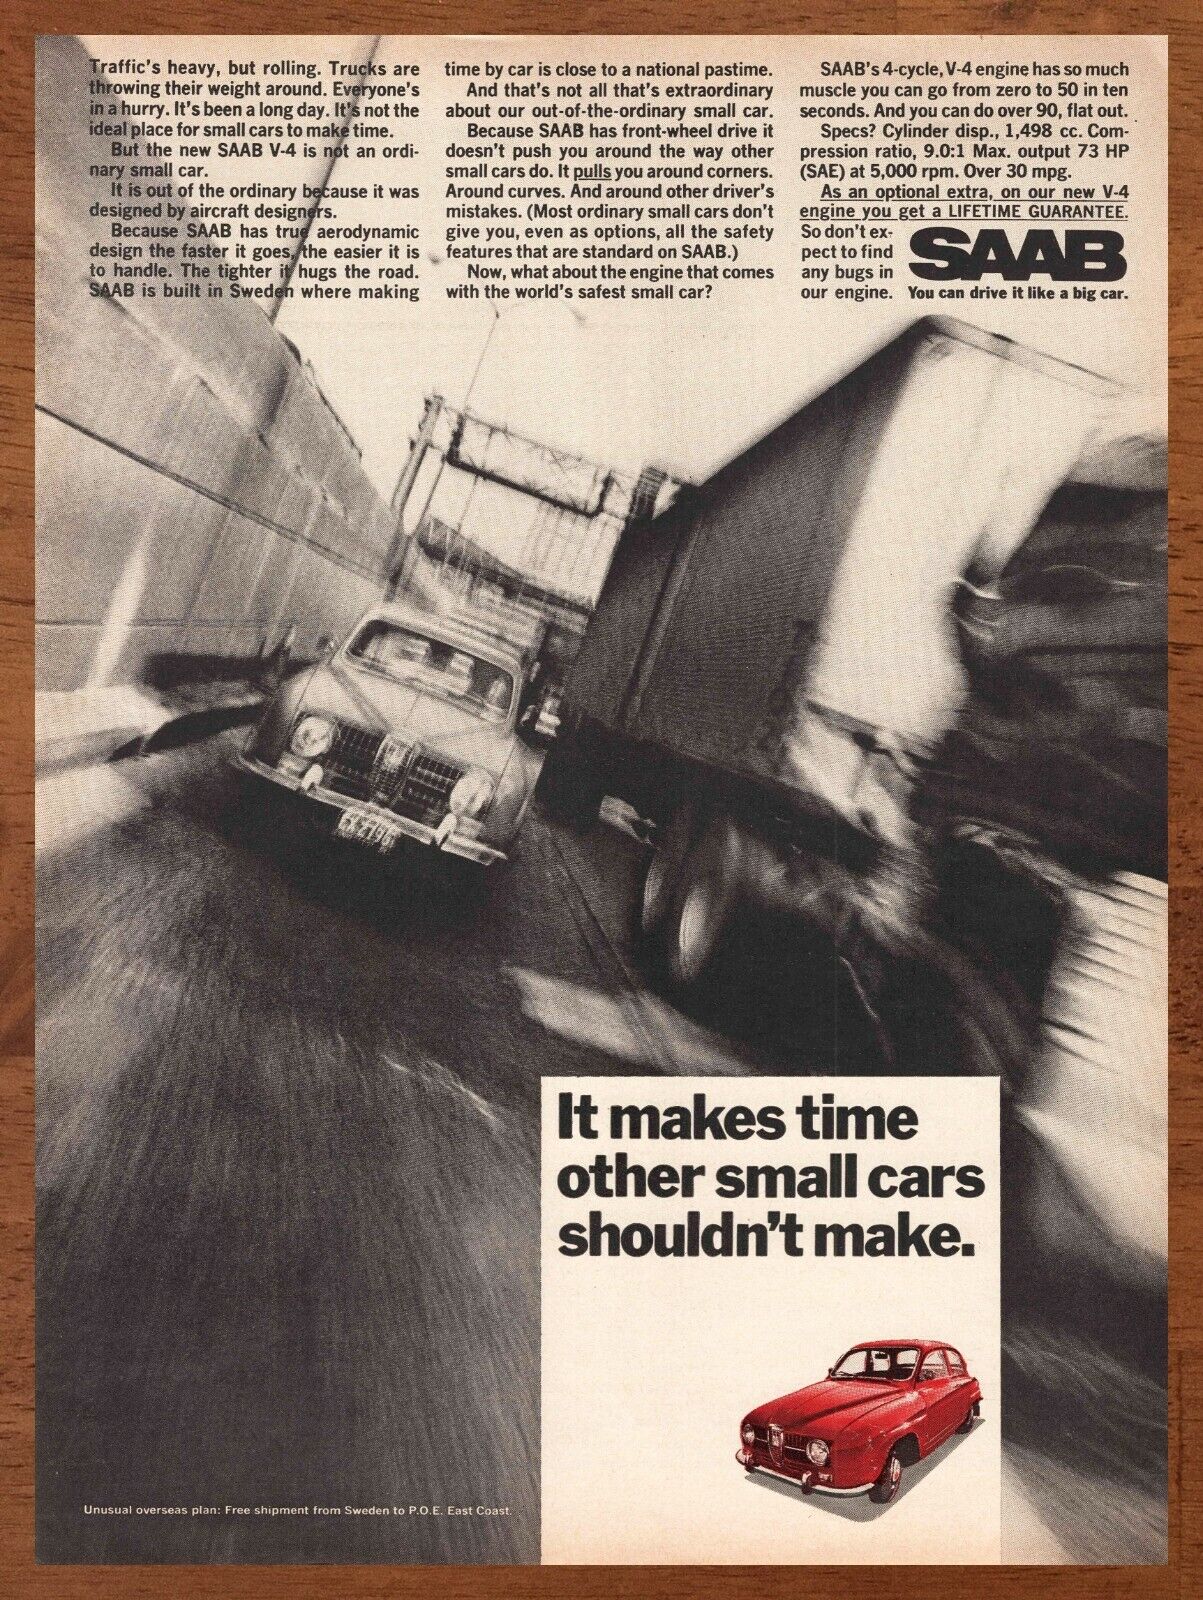 1967 SAAB V-4 Vintage Print Ad/Poster 60s Retro Car Truck Man Cave Bar Art Décor